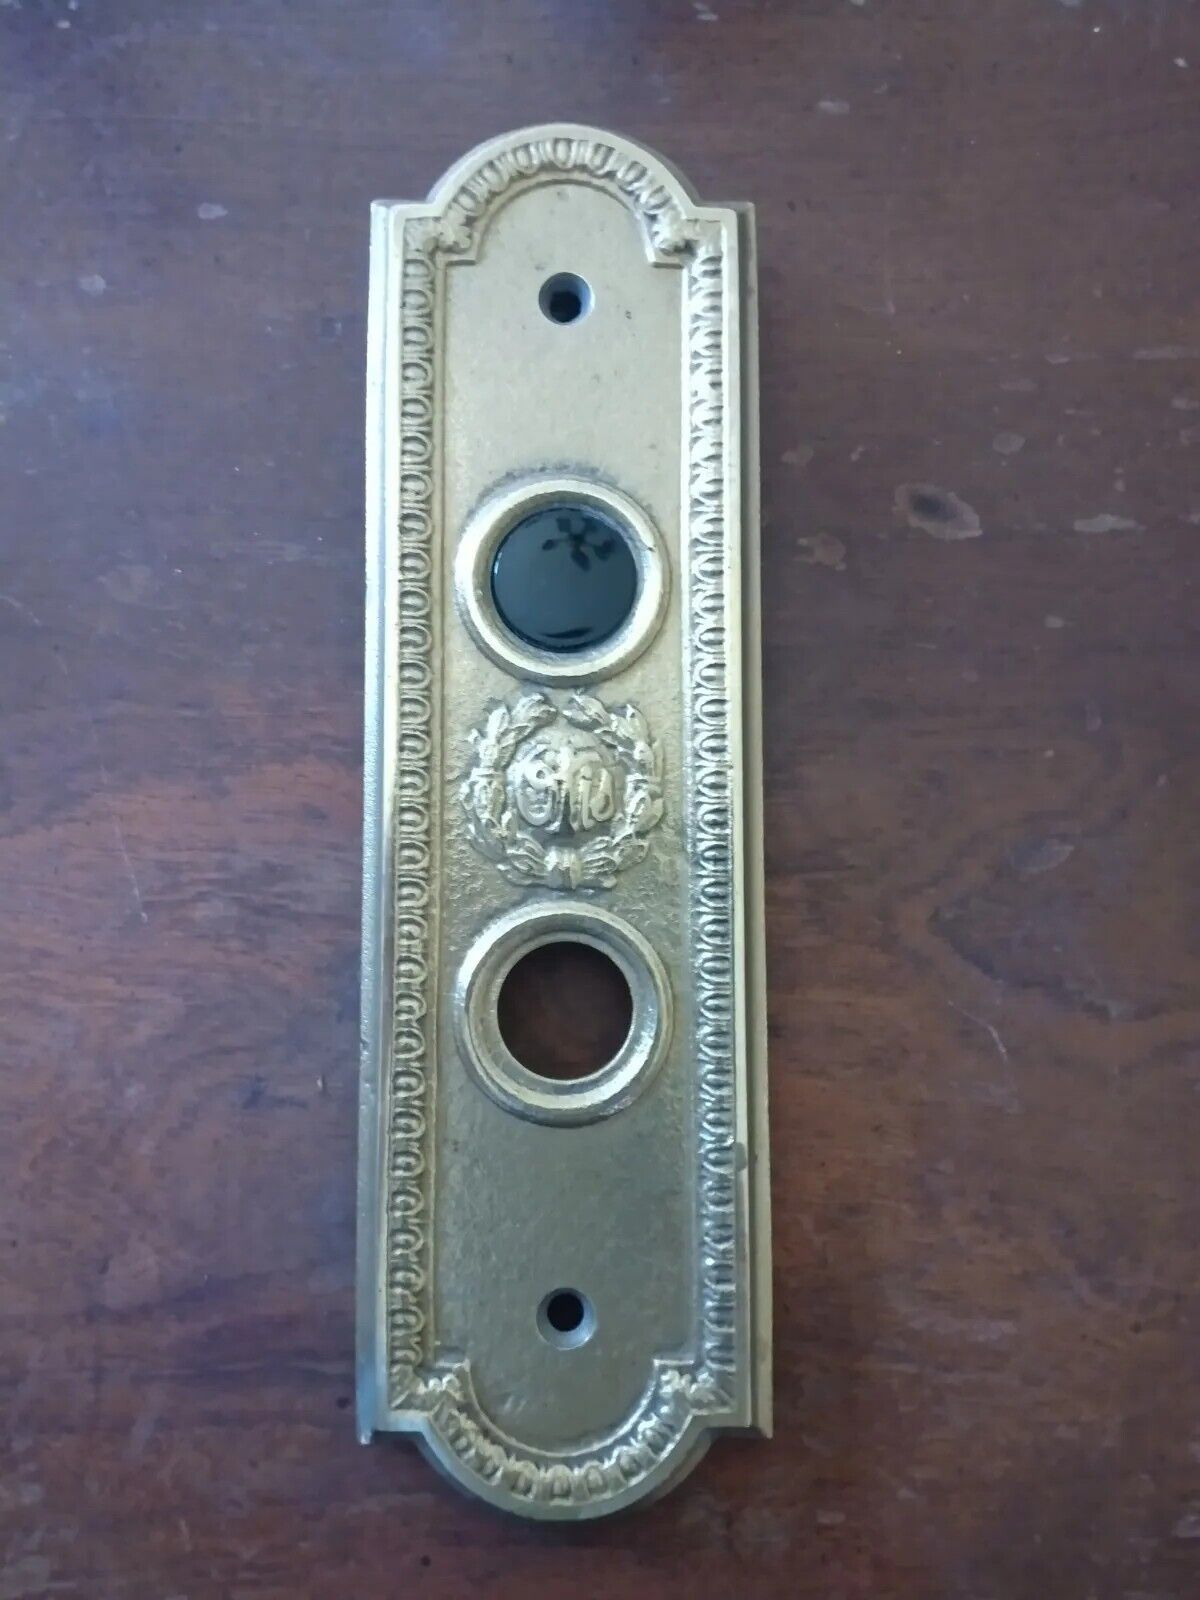 Antique otis Elevator Call Button in use Panel Original Hardware